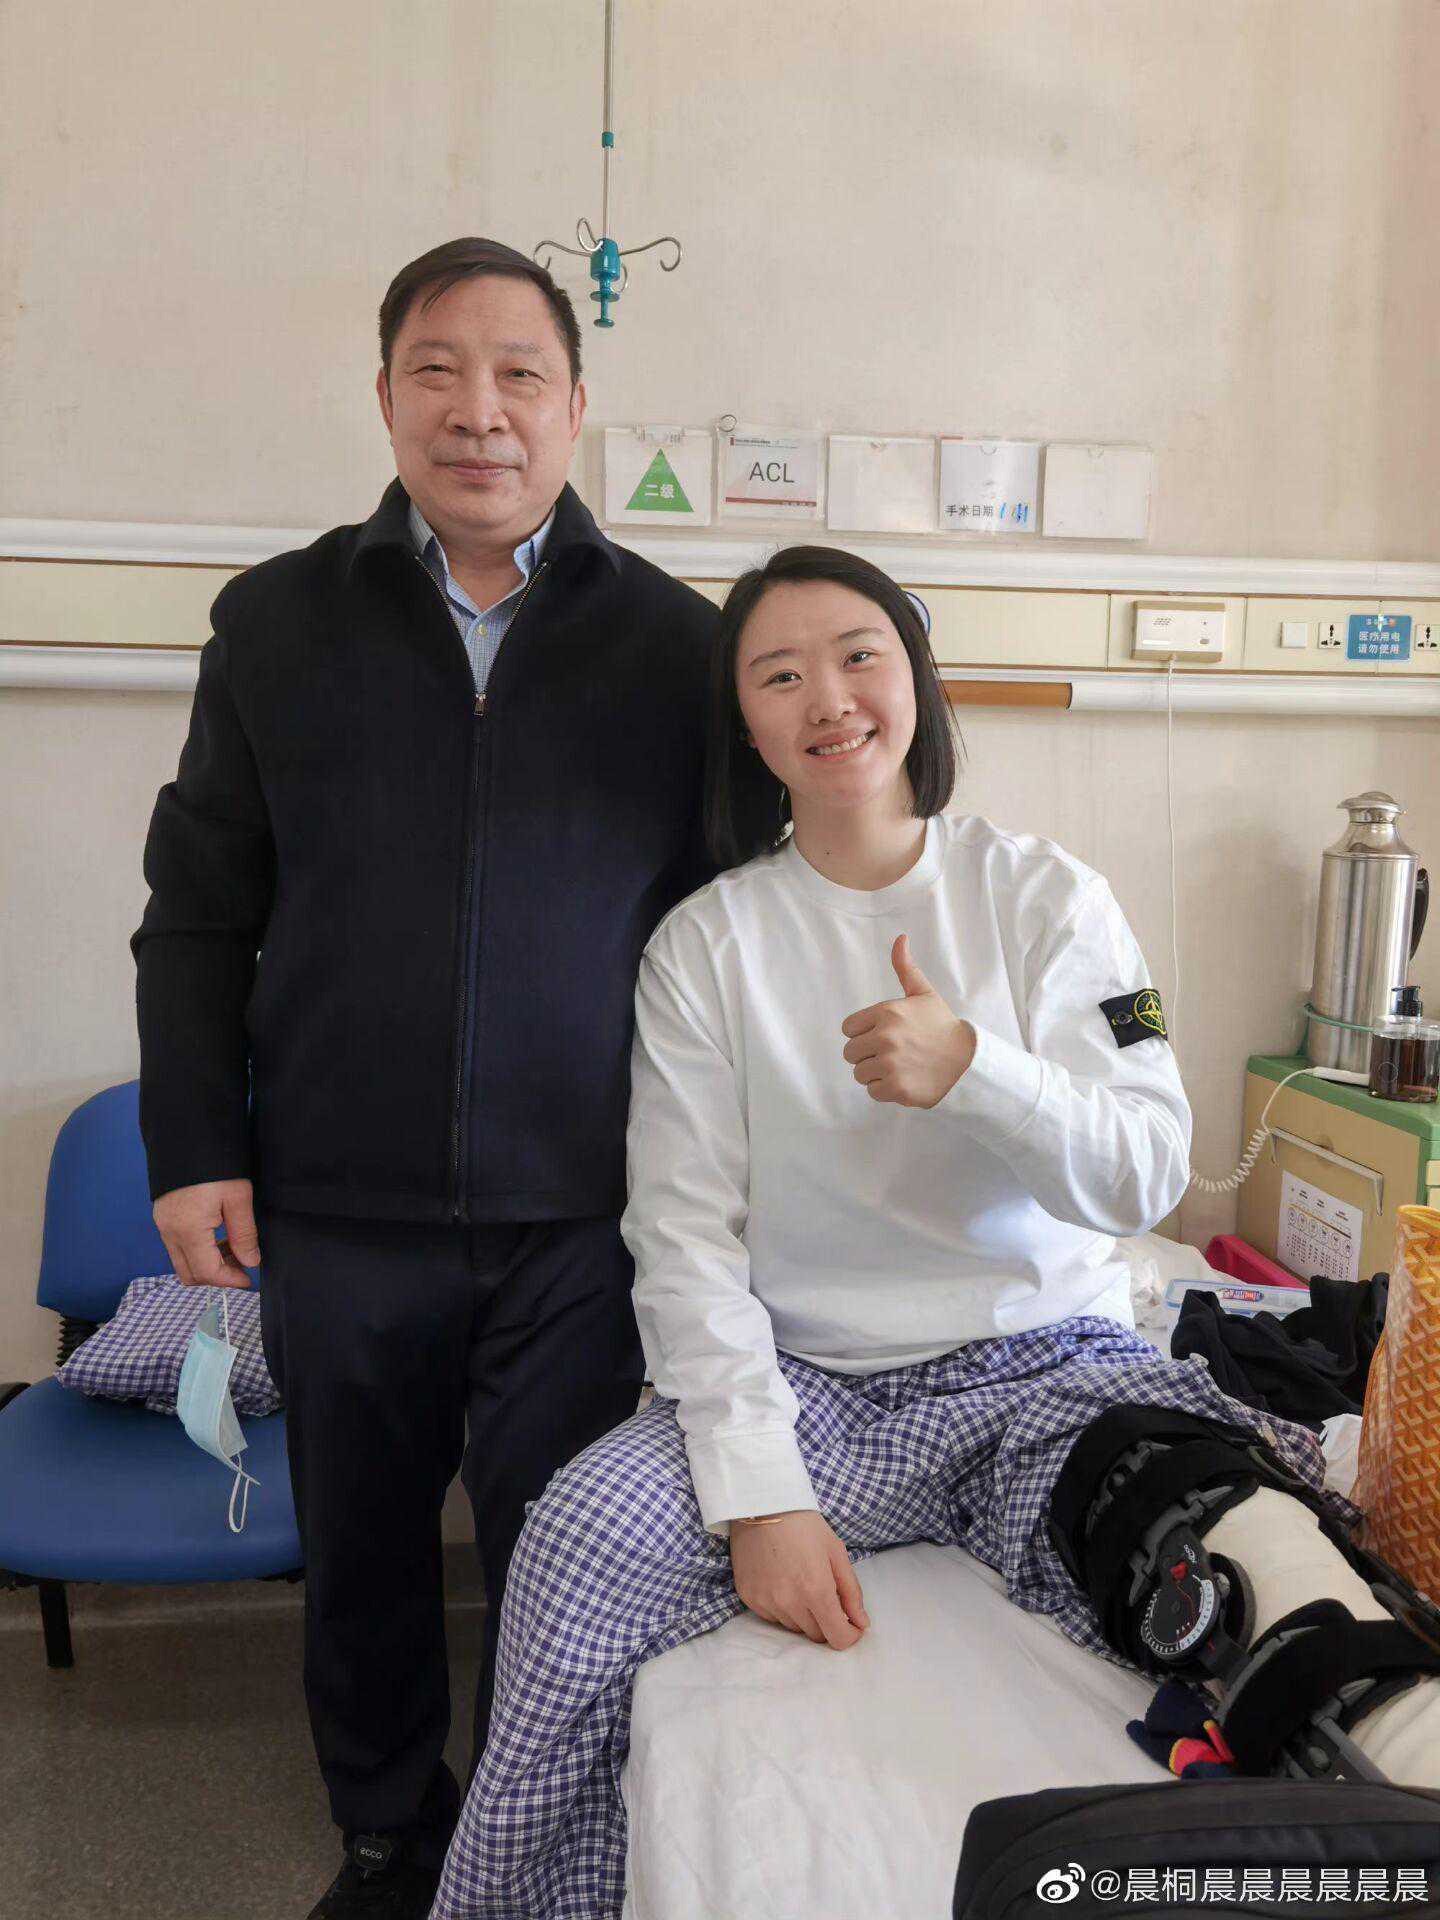 武桐桐社媒发布已出院消息：感谢主刀医生和照顾自己的护士护工